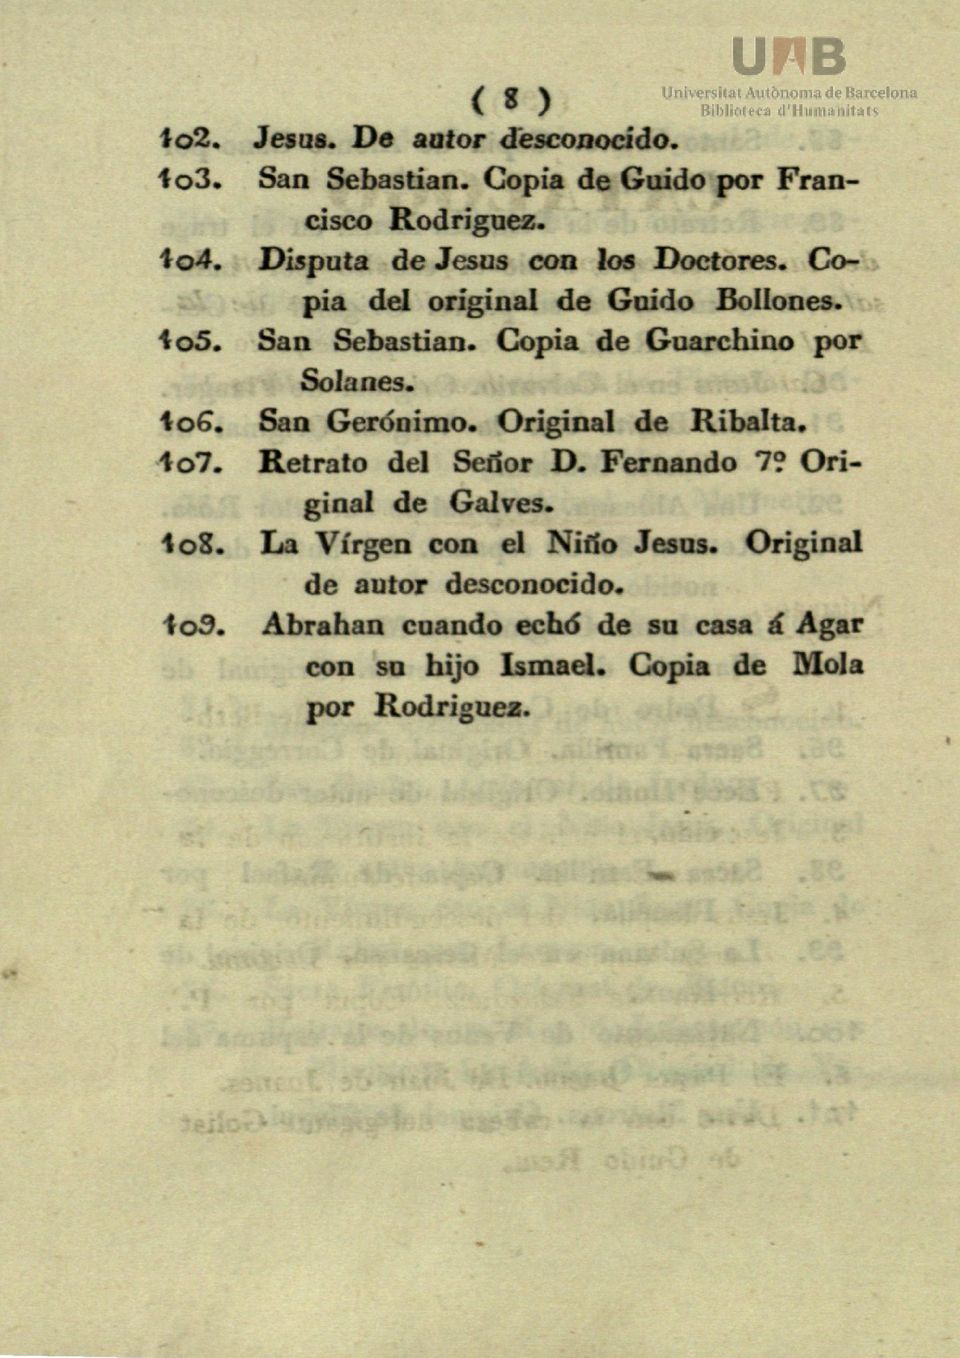 Copia de Guarchino por Solanes. to6. San Gerónimo. Original de Ribalta. to7. Retrato del Señor D. Fernando 7?